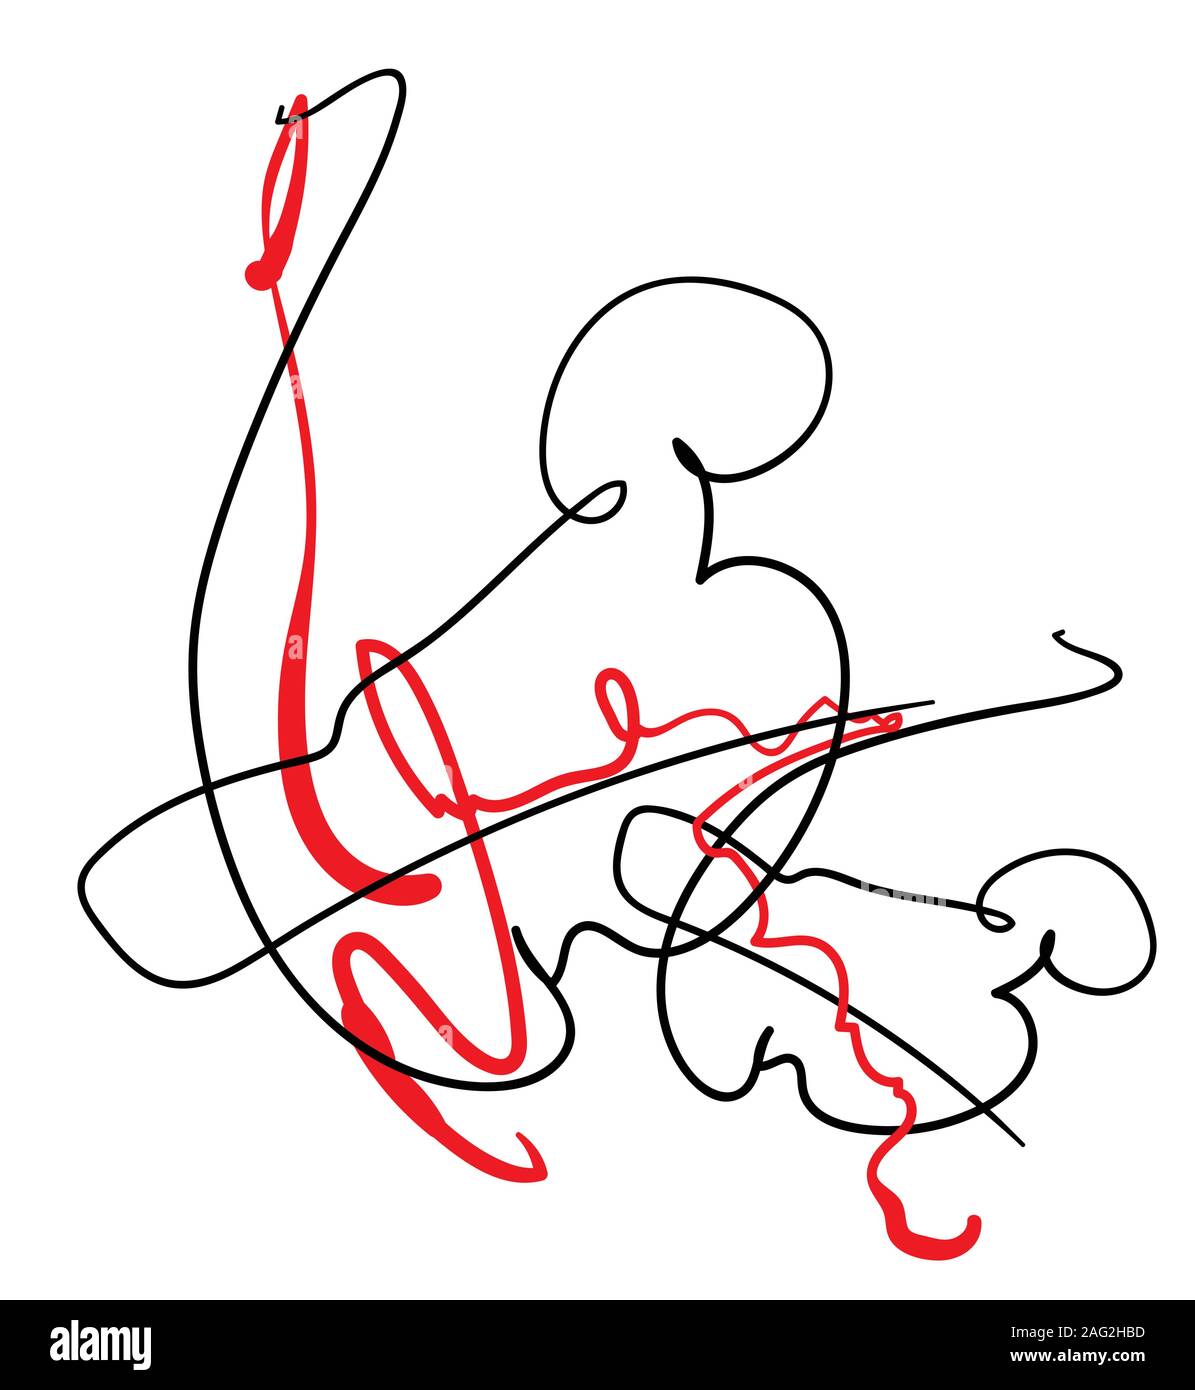 contour abstrait composition contemporaine, lignes noires et rouges avec motif moderne surréaliste minimaliste Illustration de Vecteur